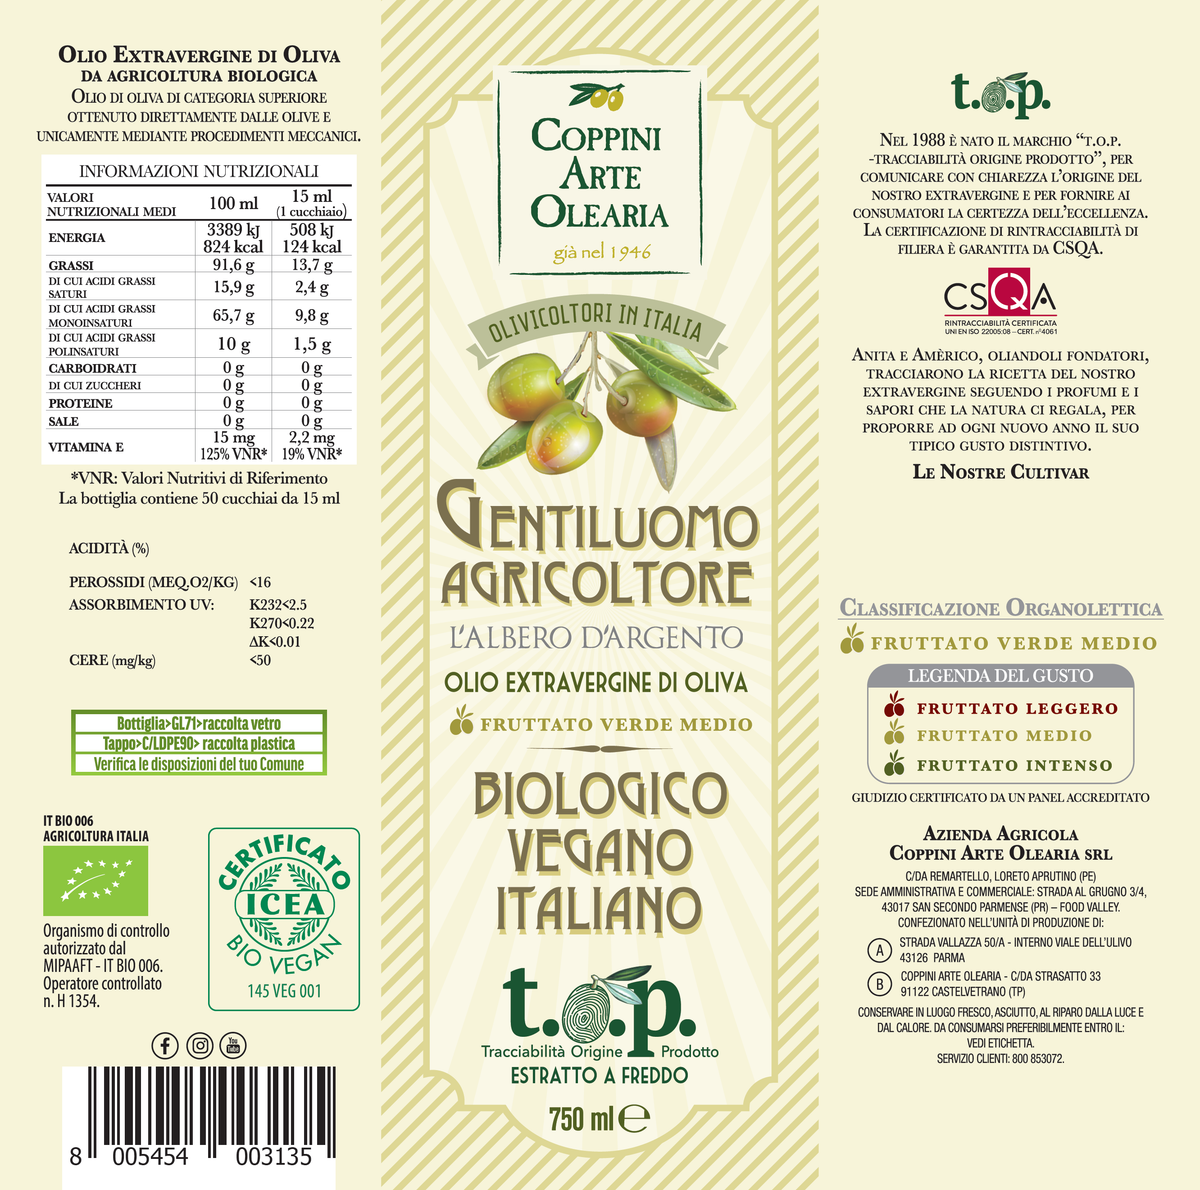 etichetta olio evo biologico vegano Coppini Arte Olearia